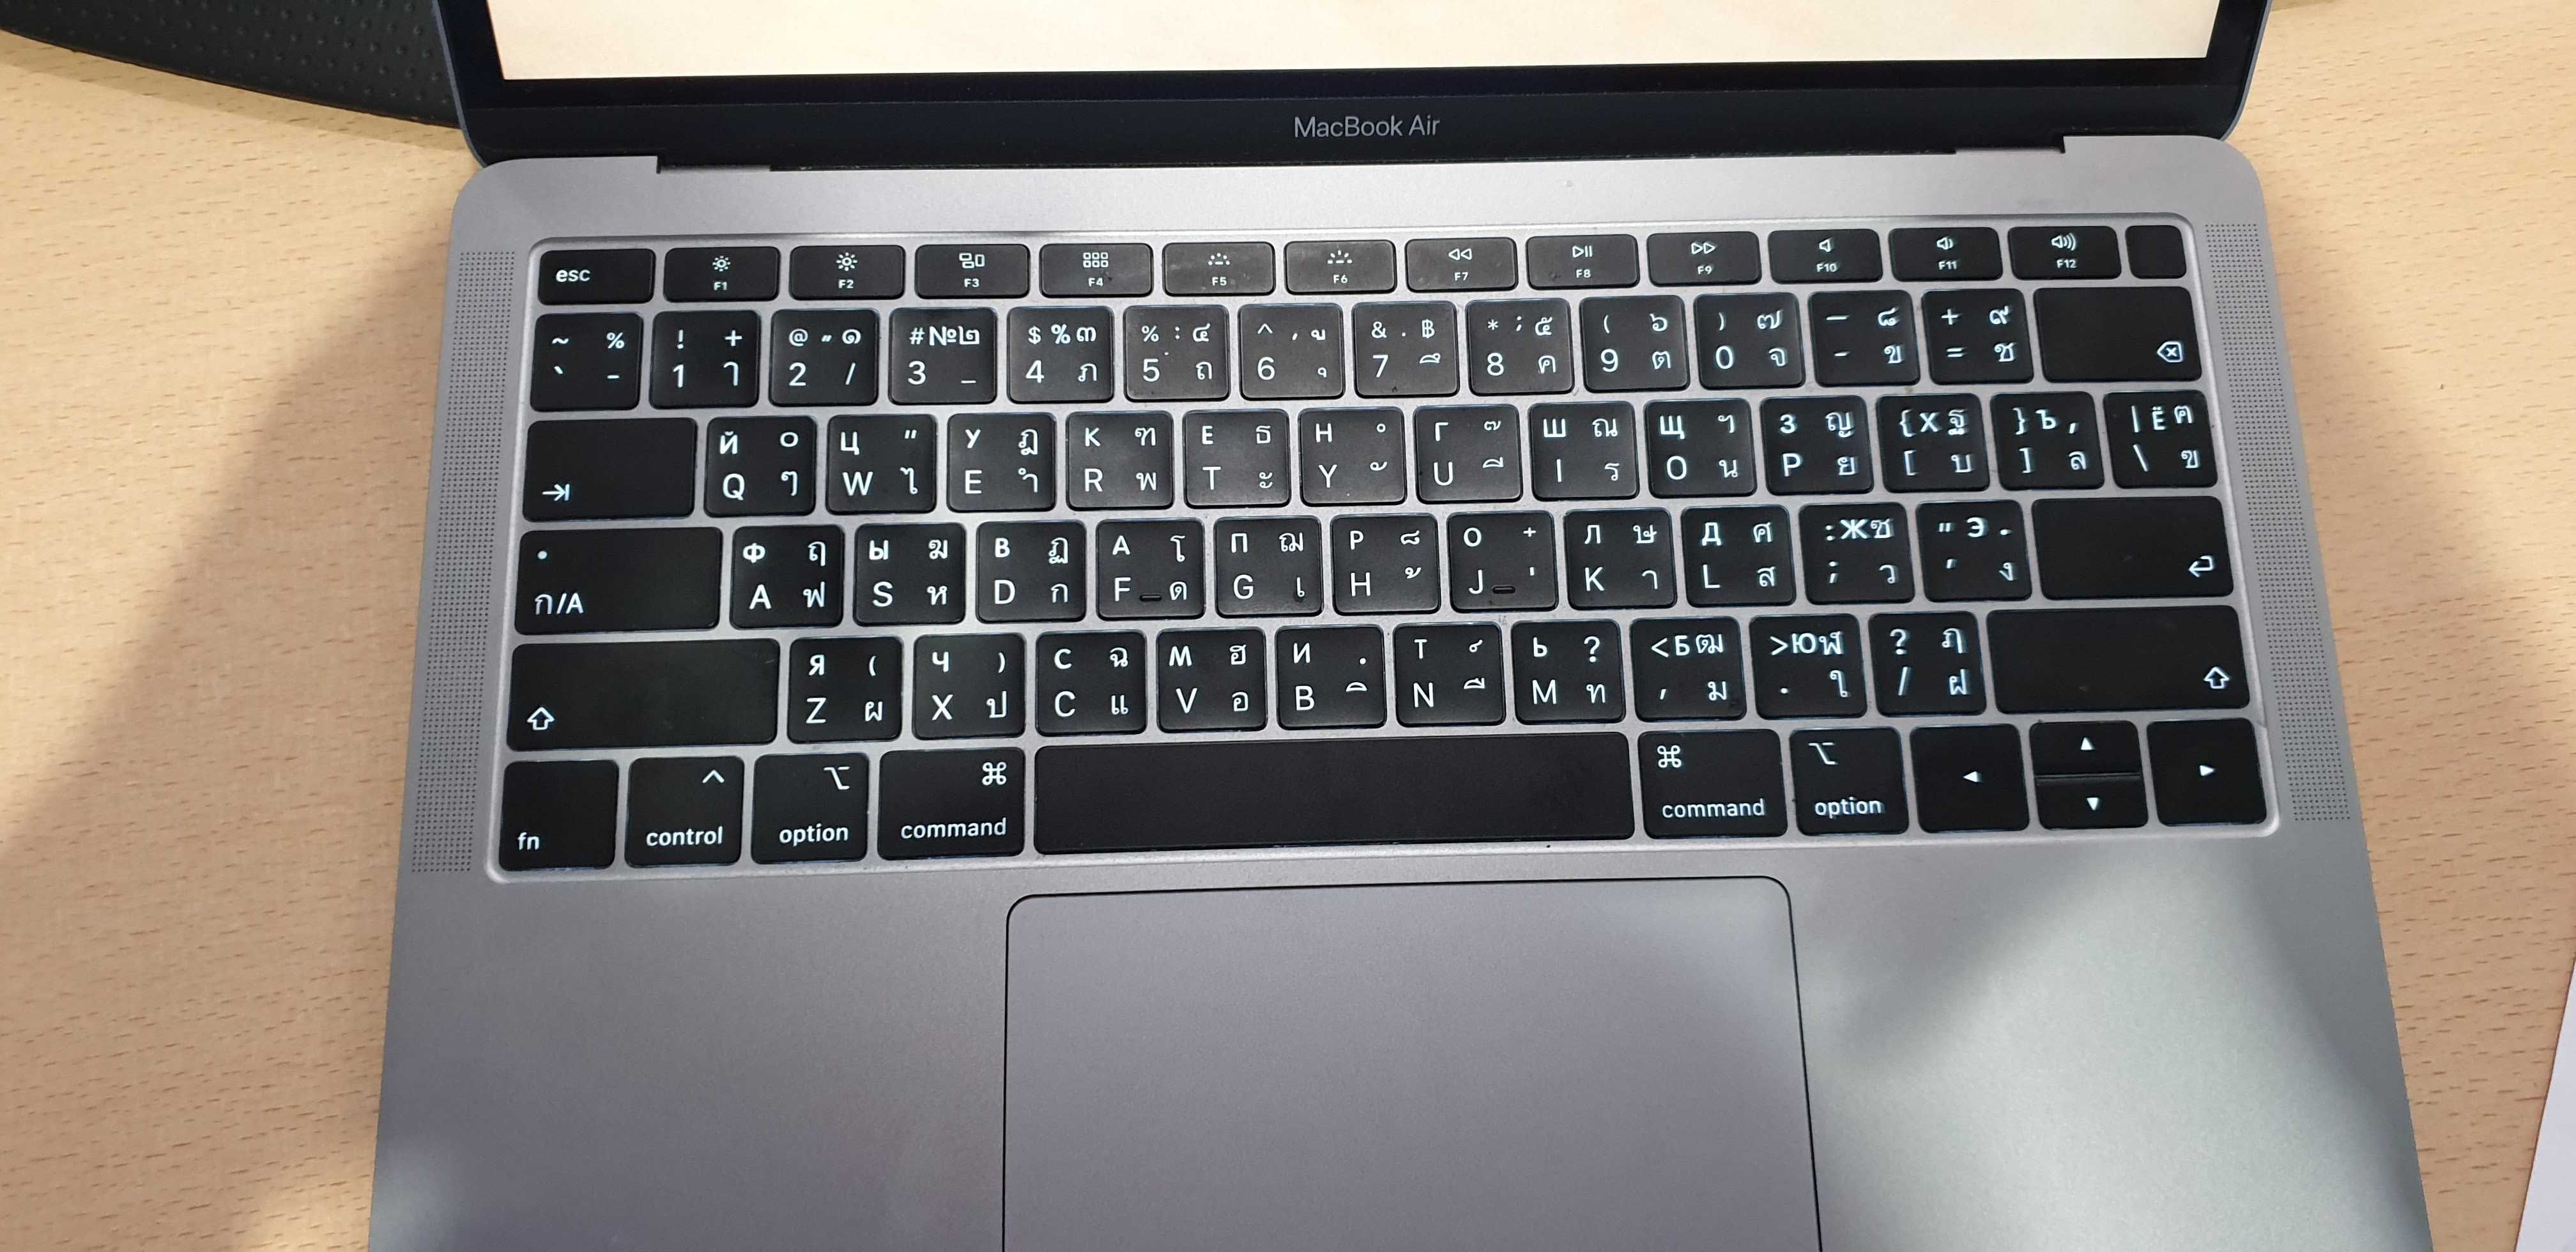 Гравіювання клавіатури | Лазерна гравіровка ноутбука